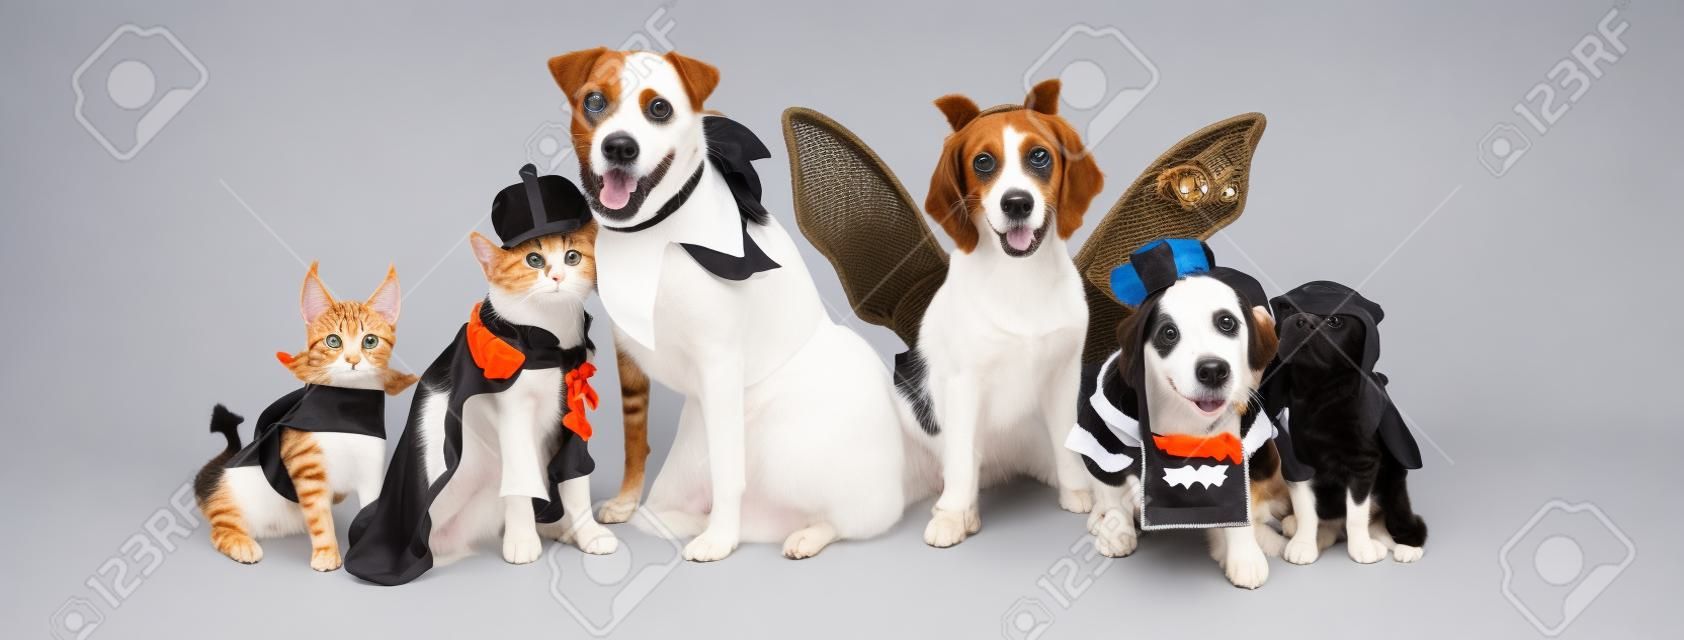 Fila di cani e gatti insieme che indossano simpatici costumi di Halloween. Banner Web o intestazione social media su bianco.